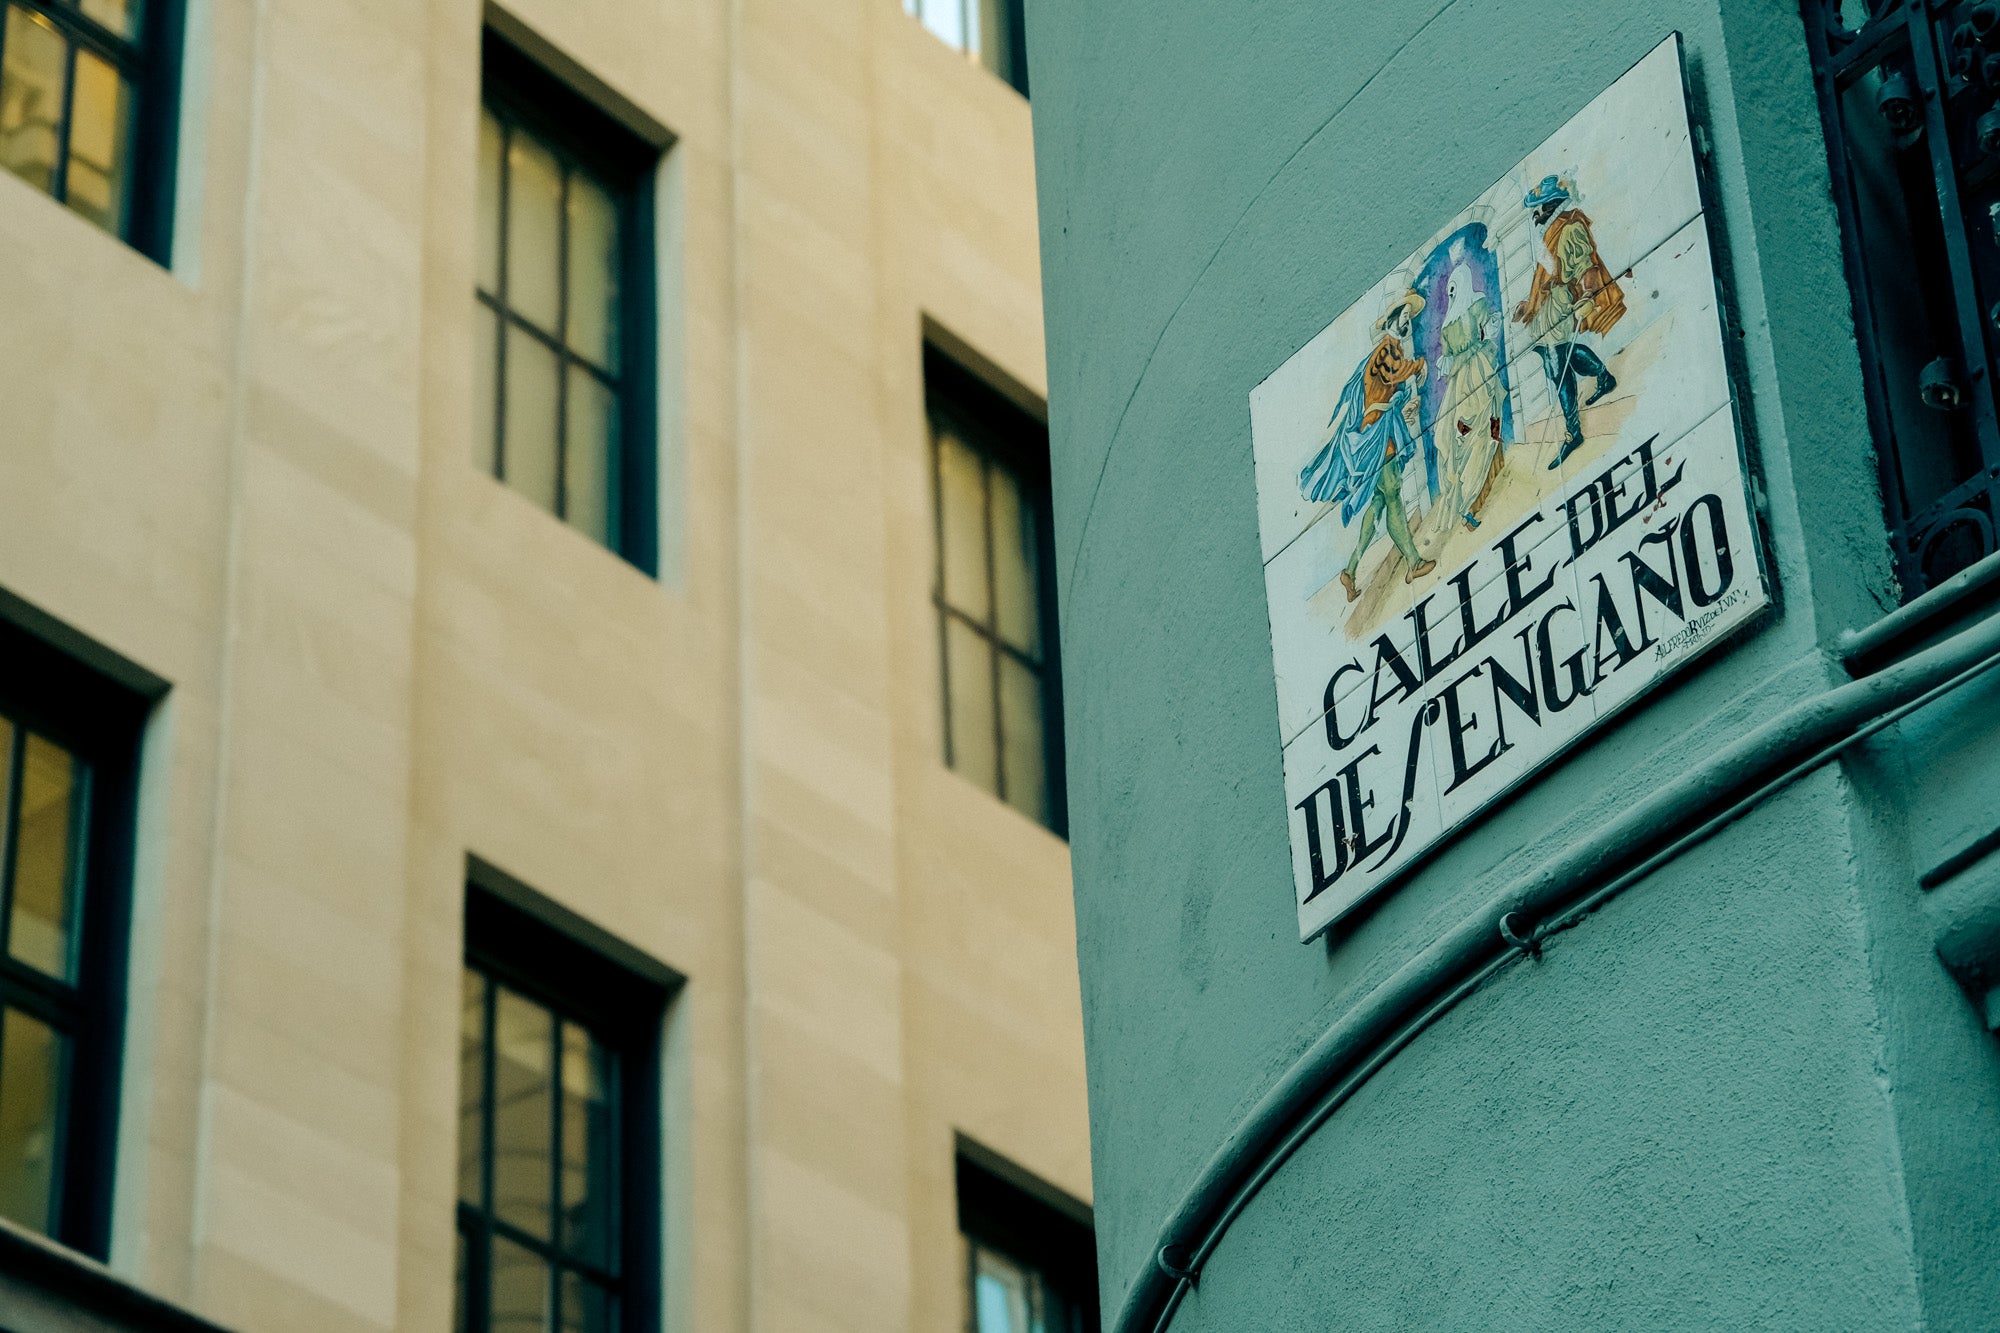 El azulejo de la calle Desengaño cuenta la historia del caballero Jacobo de Grattis.